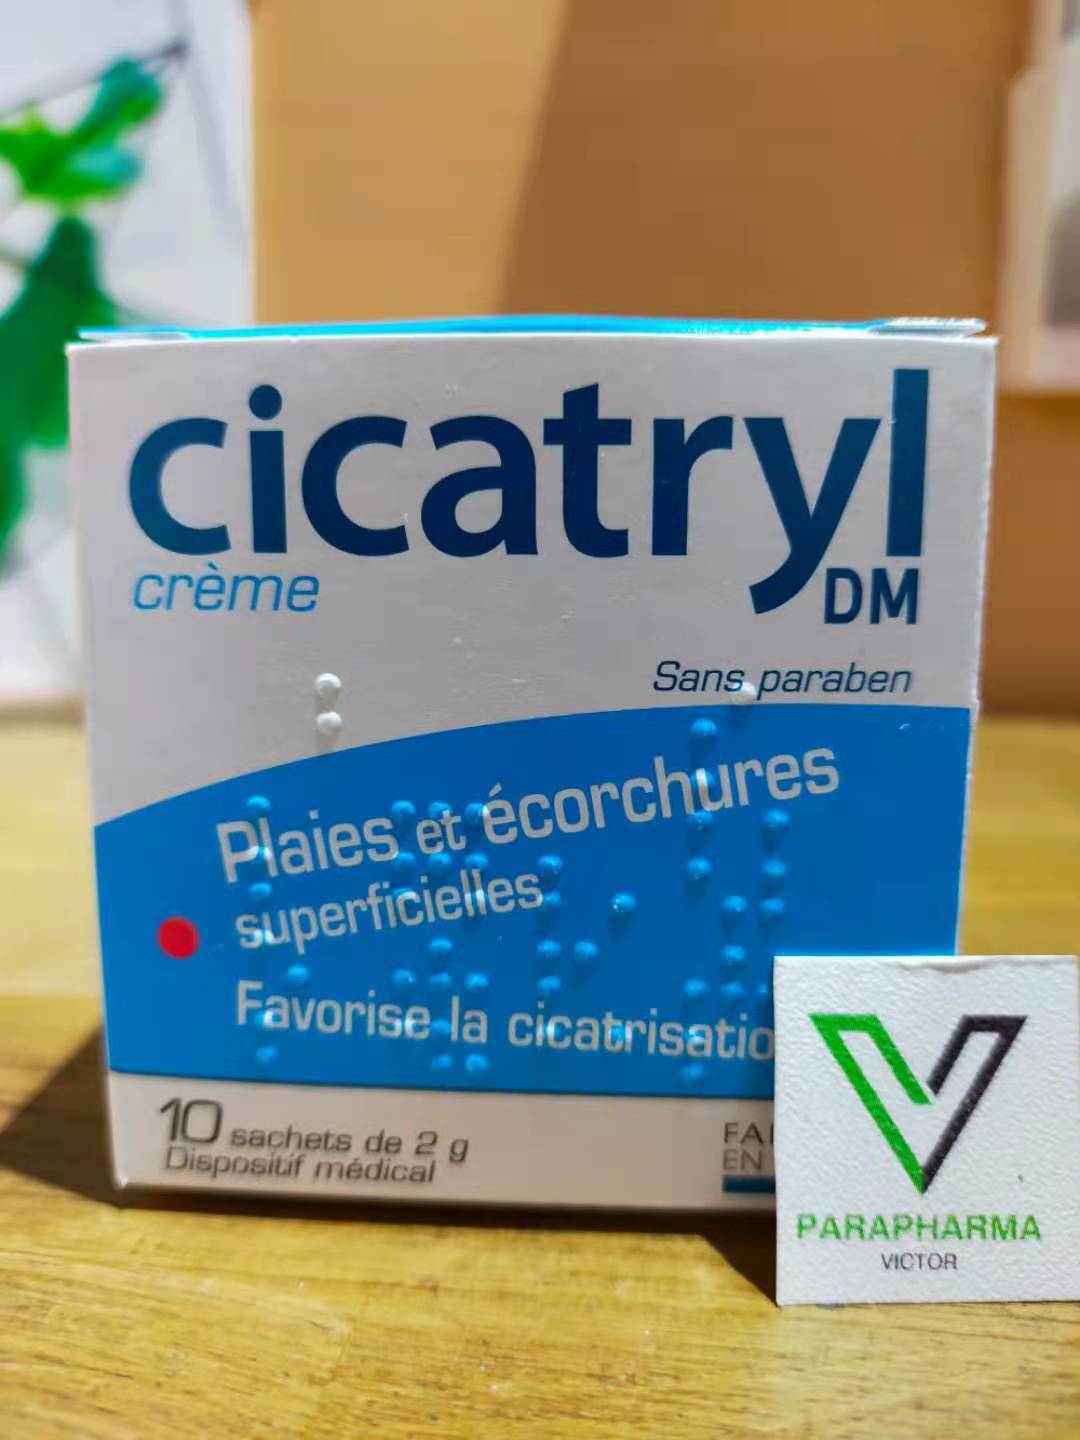 现货法国cicatryl dm creme止损舒缓护理烫伤膏烧伤愈合凝胶10包